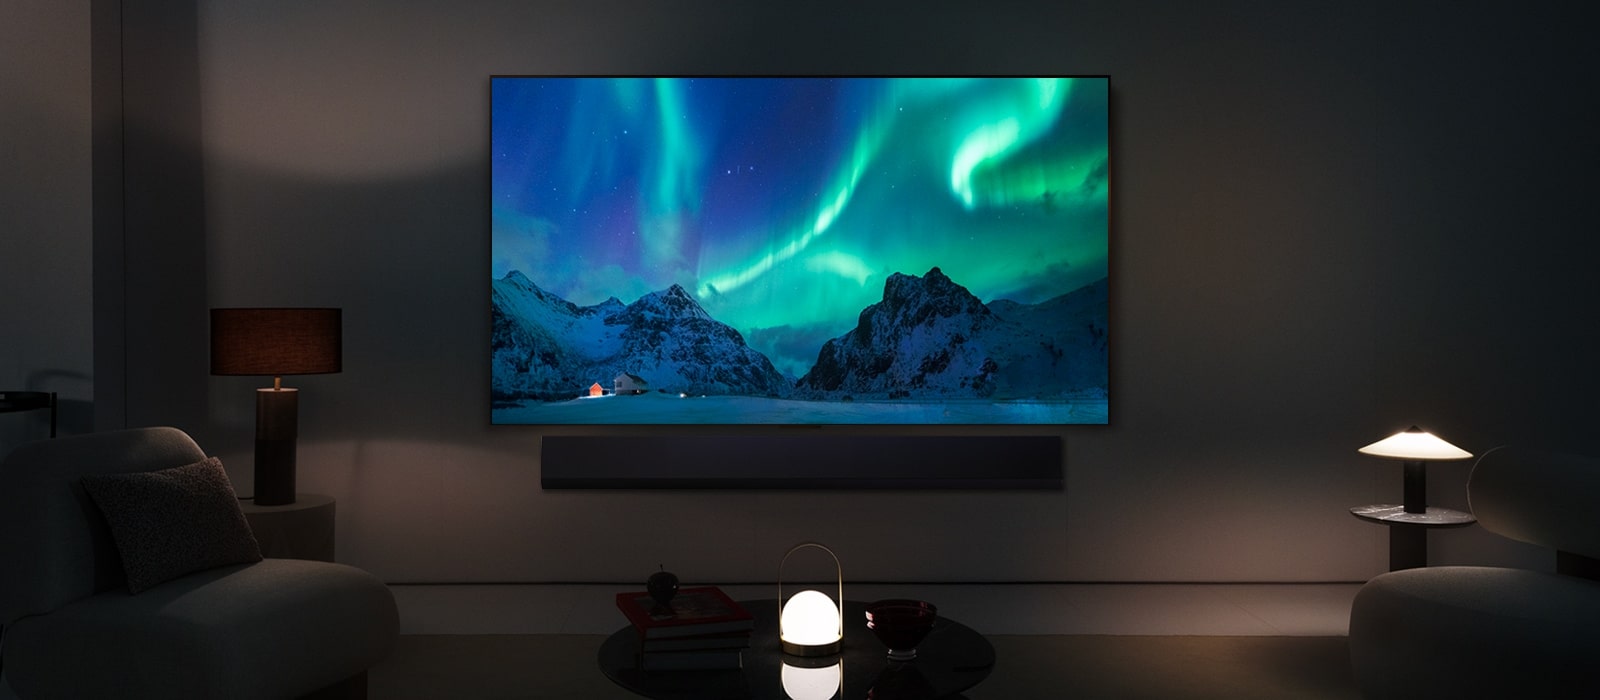 LG OLED TV and LG Soundbar в съвременен дом през нощта. На екрана се показва изображението на полярното сияние с идеалното ниво на яркост.